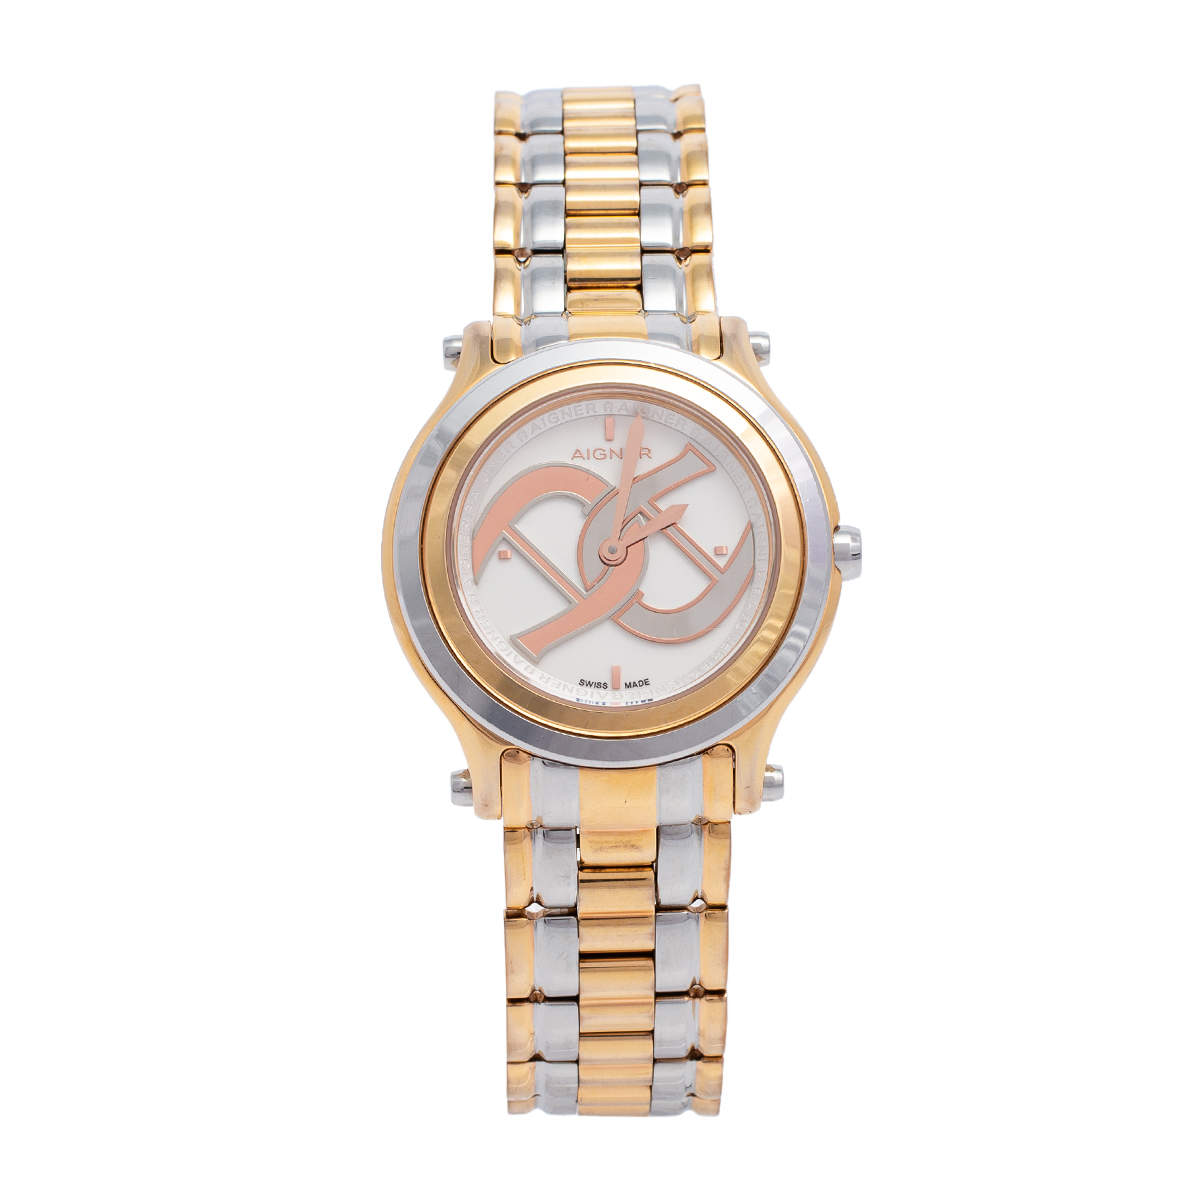 ساعة يد نسائية أيغنر يولوغنا A55200 ستانلس ستبل مطلي بالذهب الوردي لونين بيضاء 35 مم